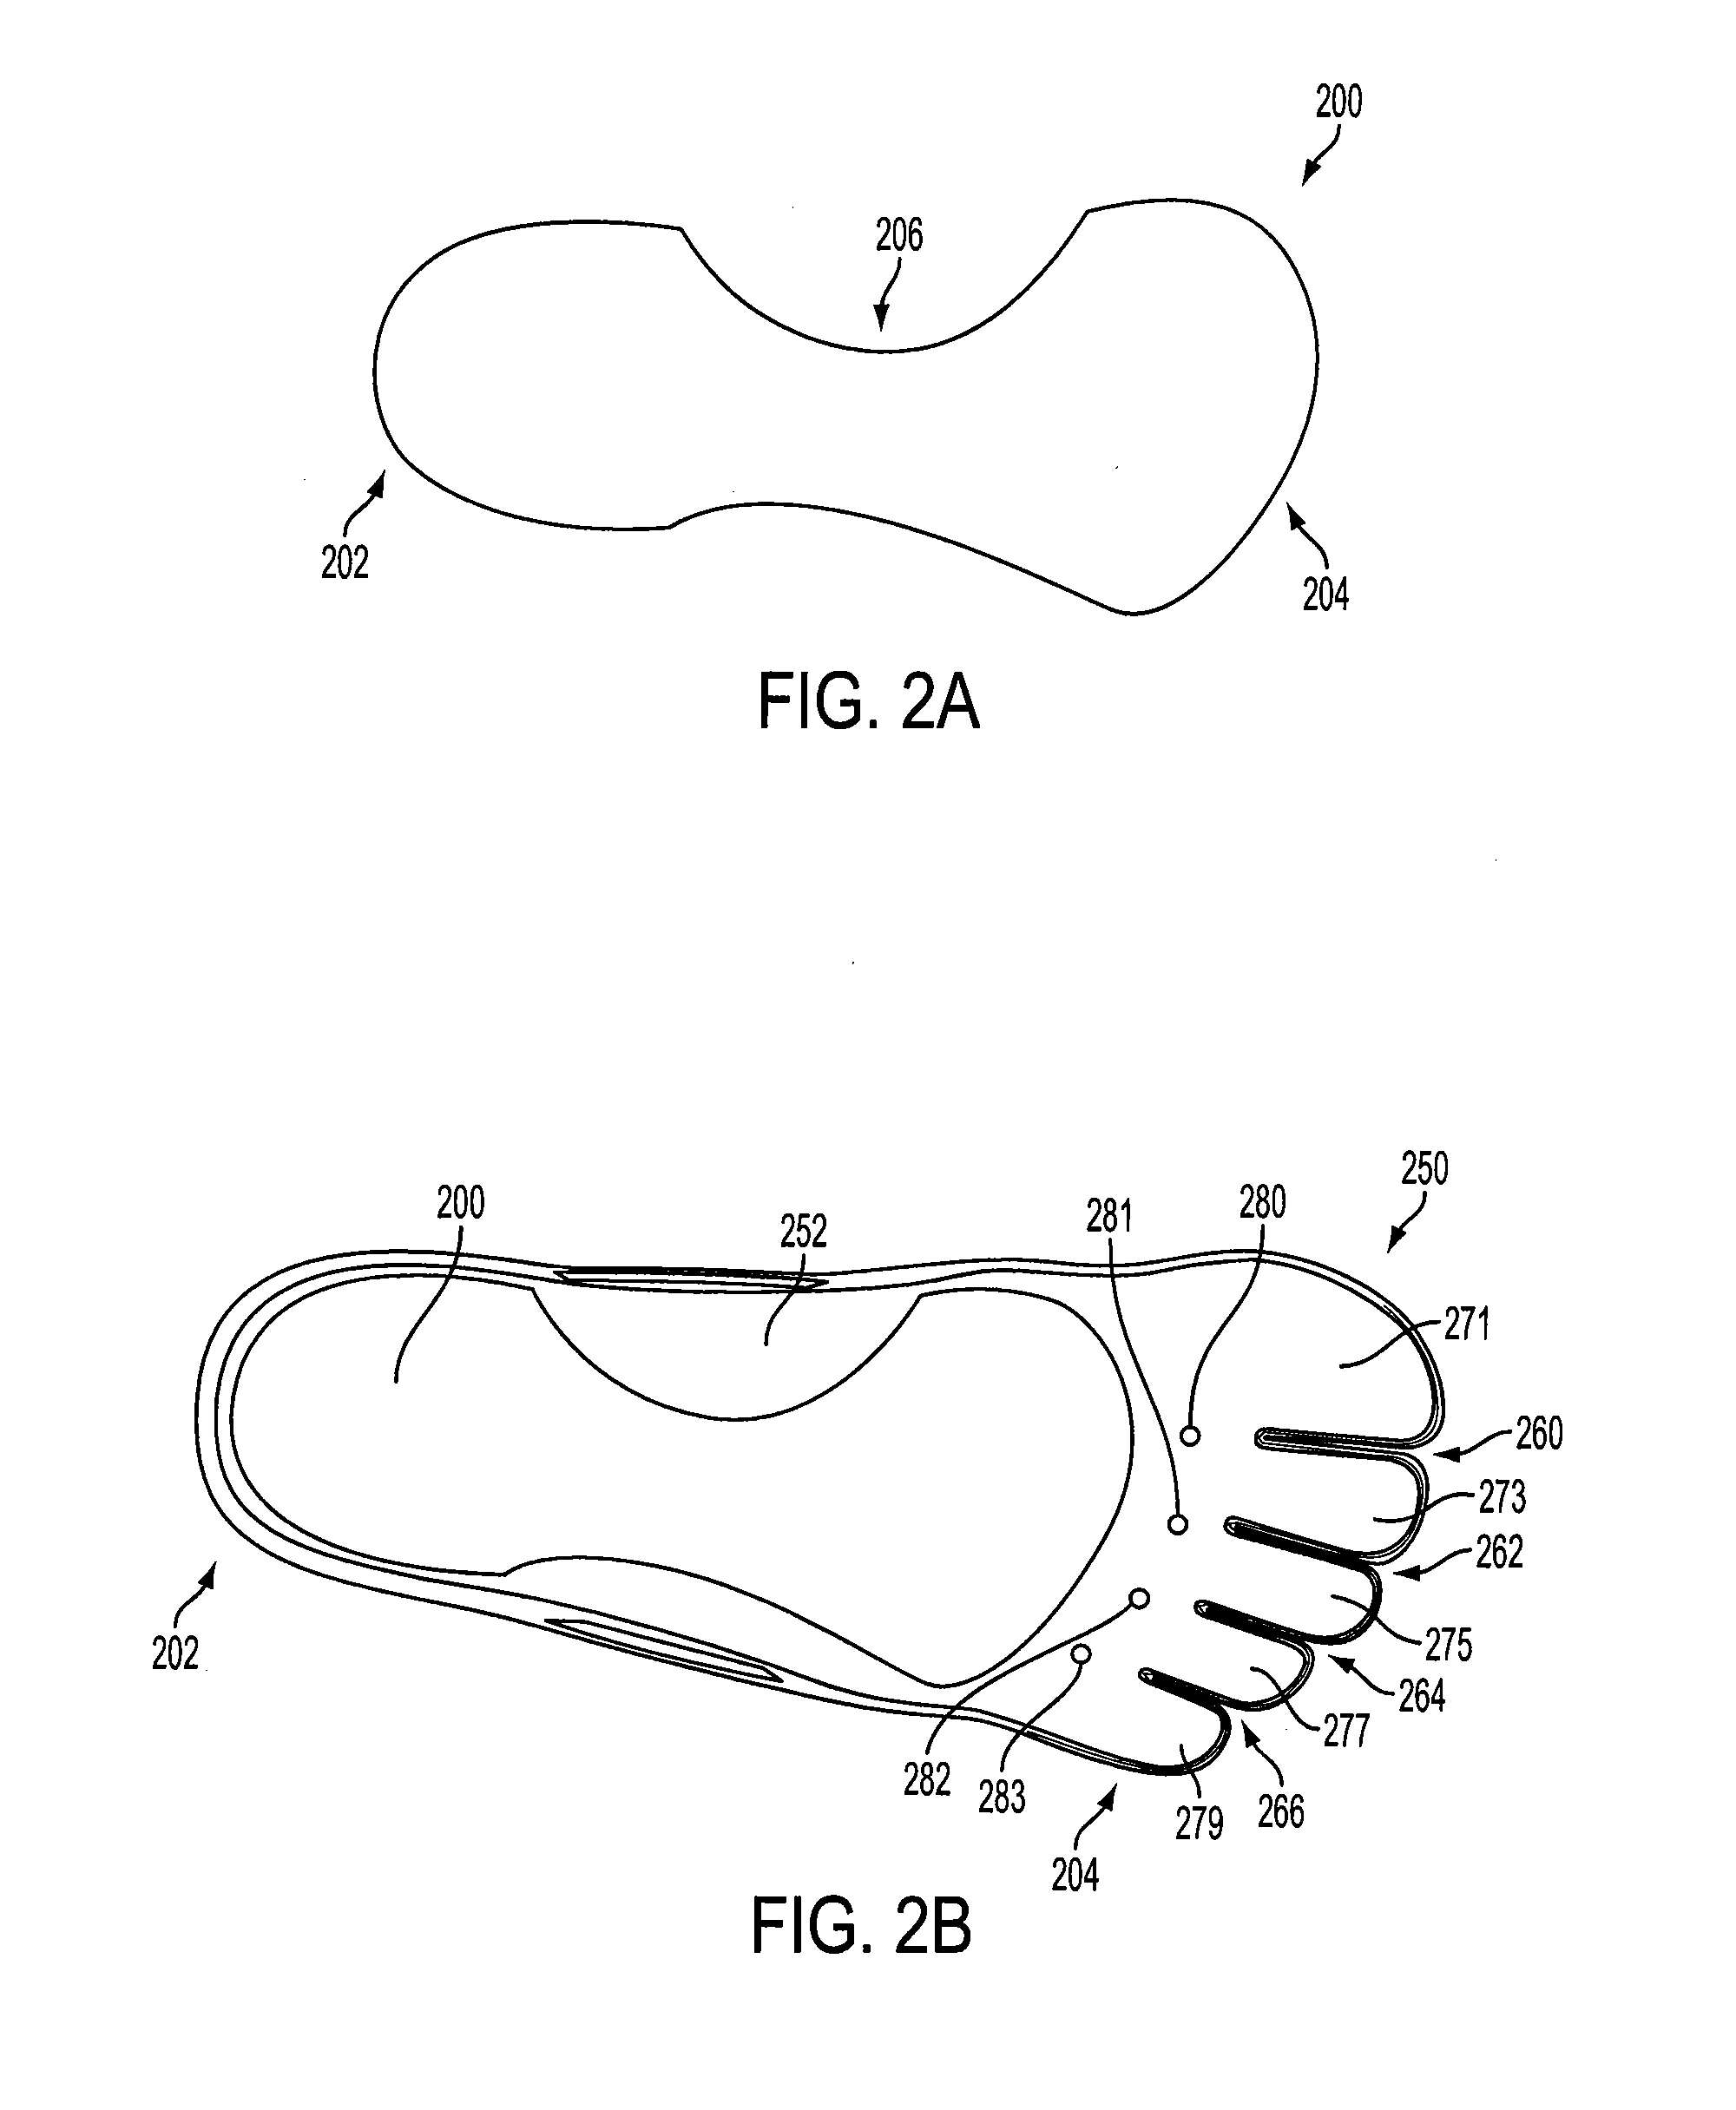 Internal shank for footwear having independent toe platforms